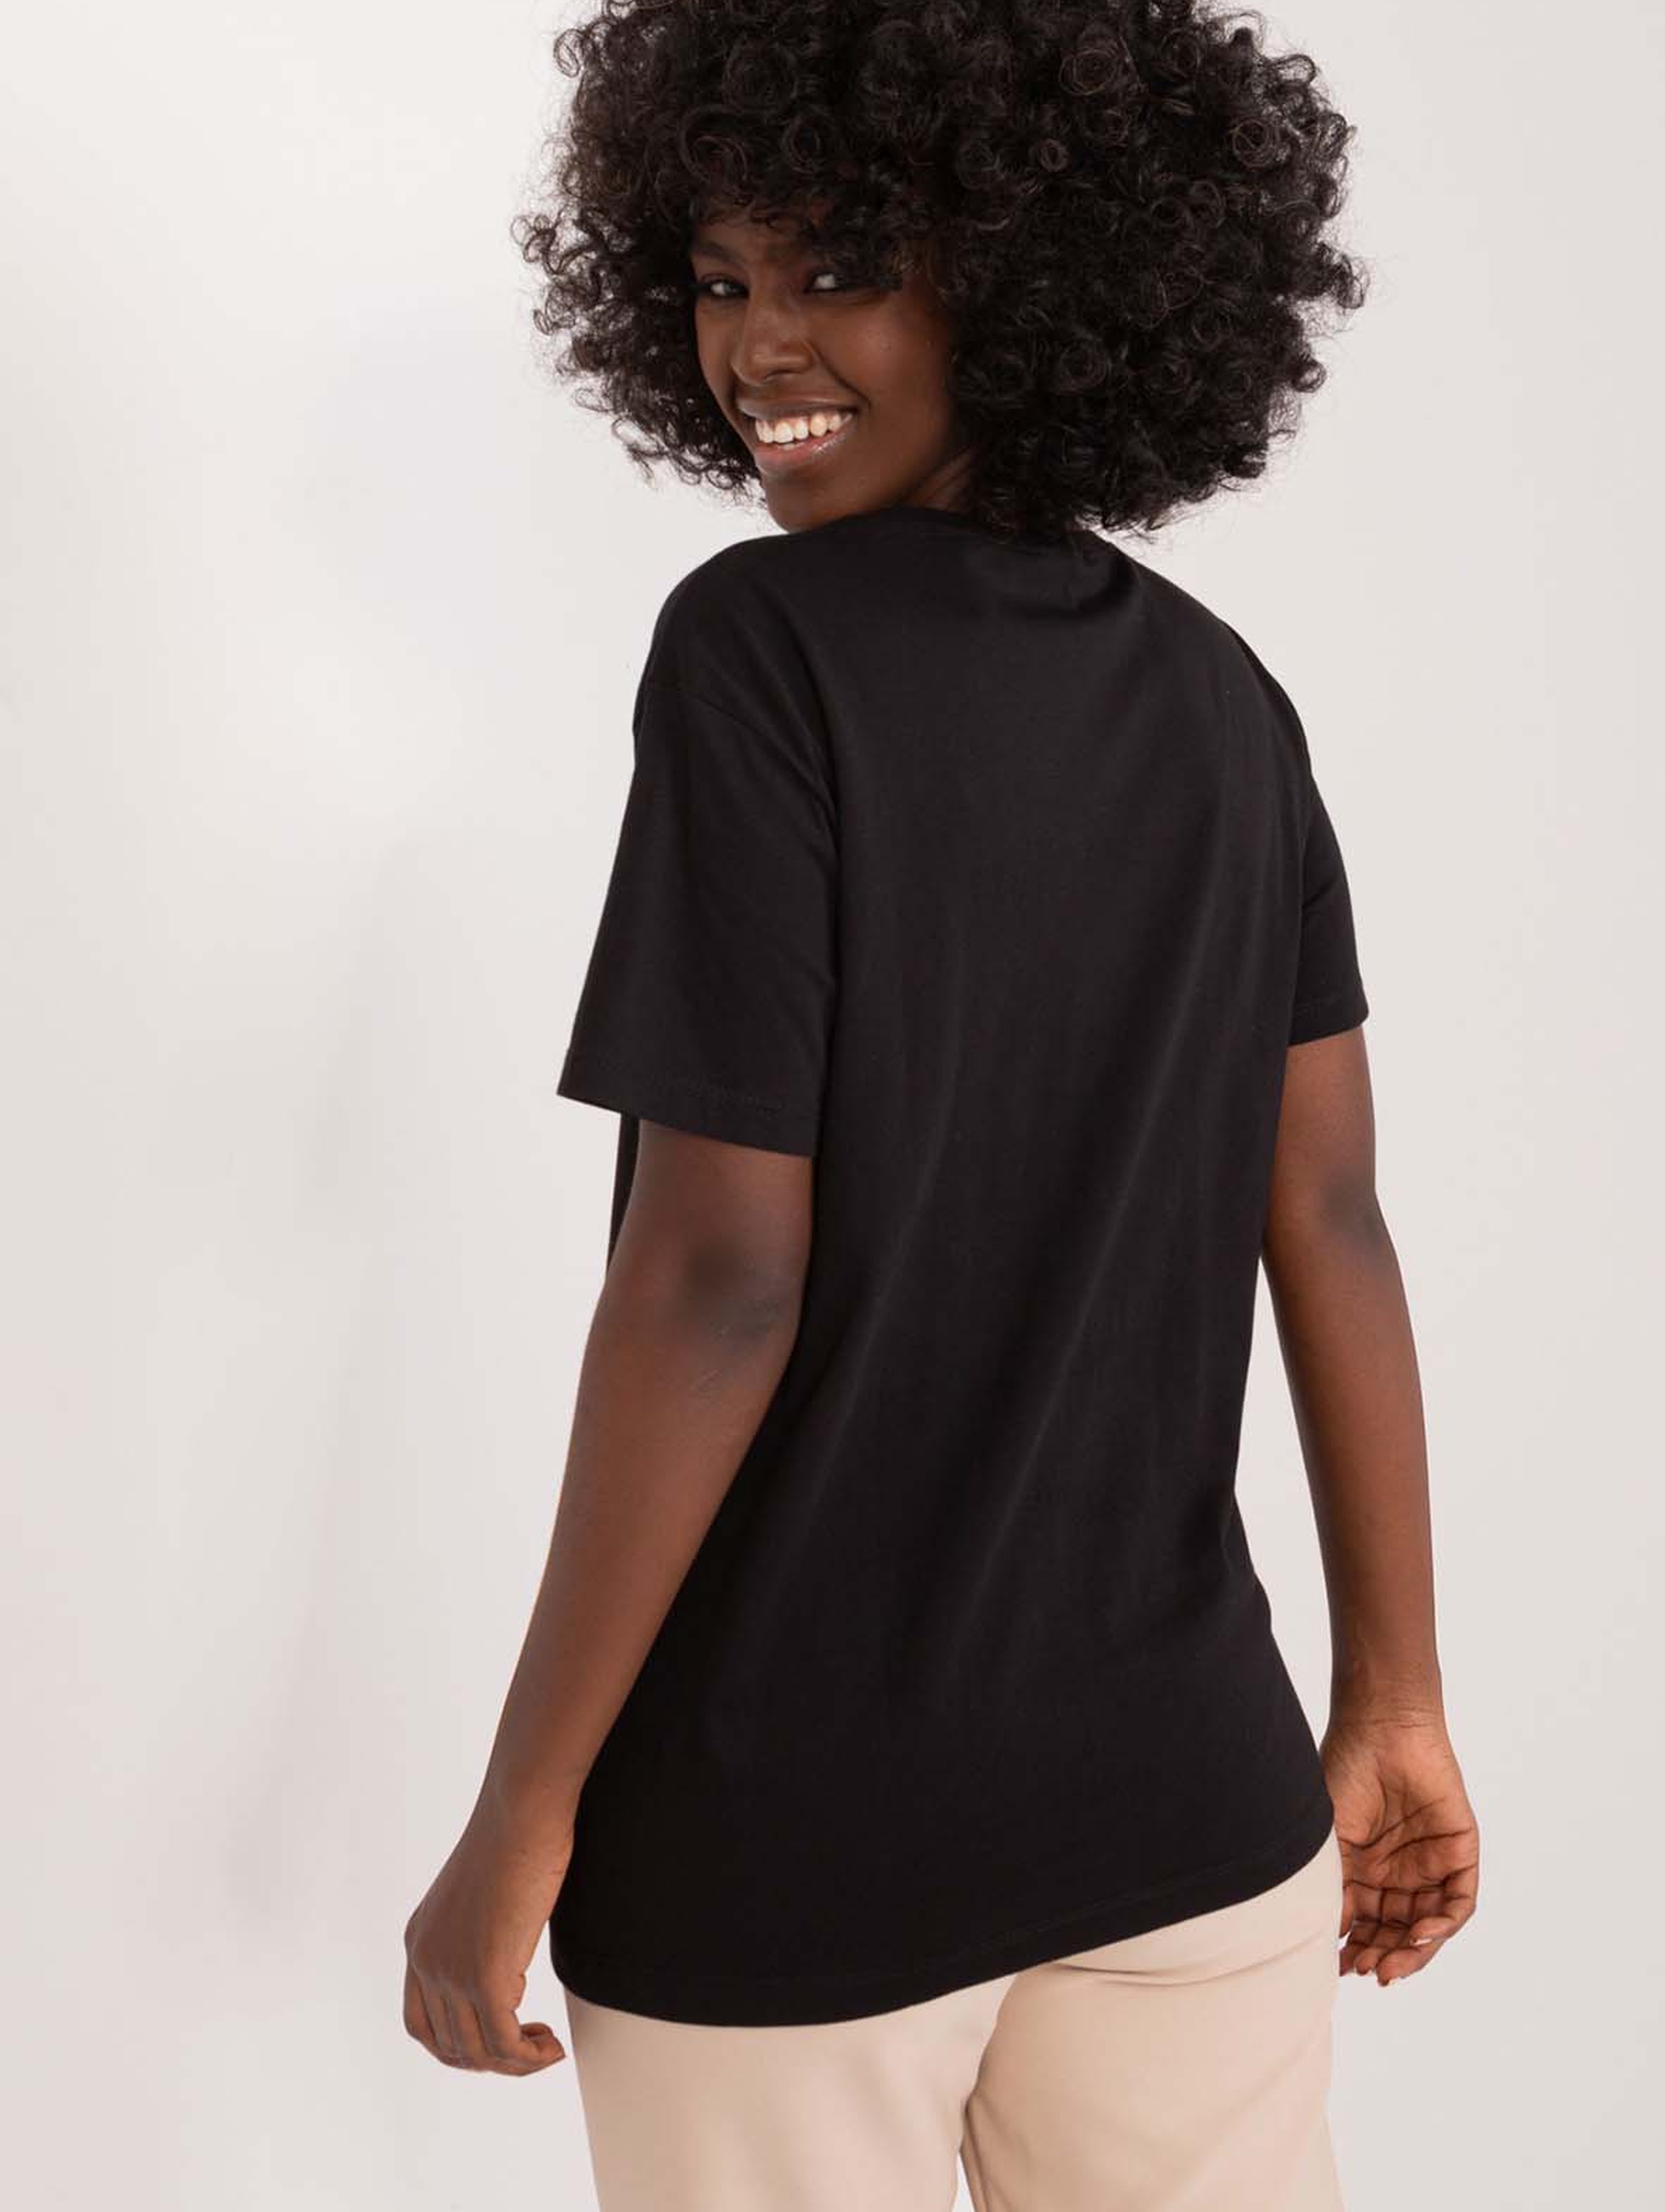 Czarny bawełniany t-shirt damski z misiem i kokardą